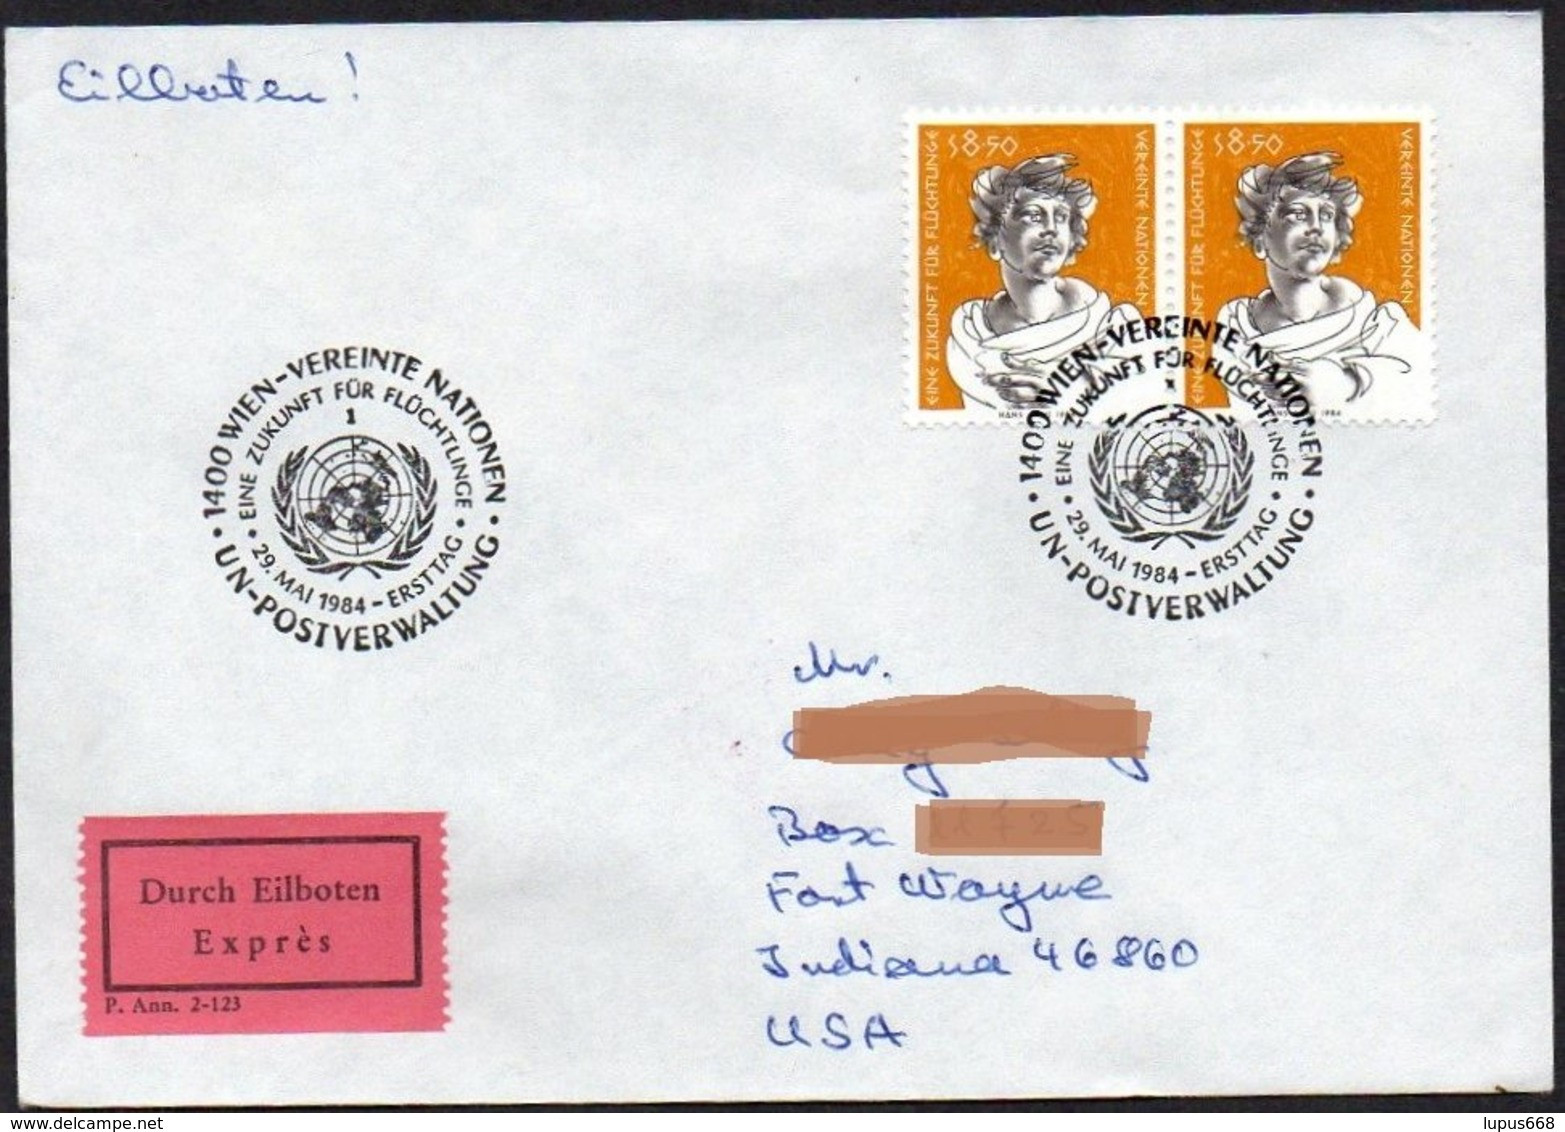 UNO - Wien  1984  MiNr. 44 (2)  Auf Express - Brief In Die U.S.A  ,  FDC; Eine Zukunft Für Flüchtlinge - Brieven En Documenten